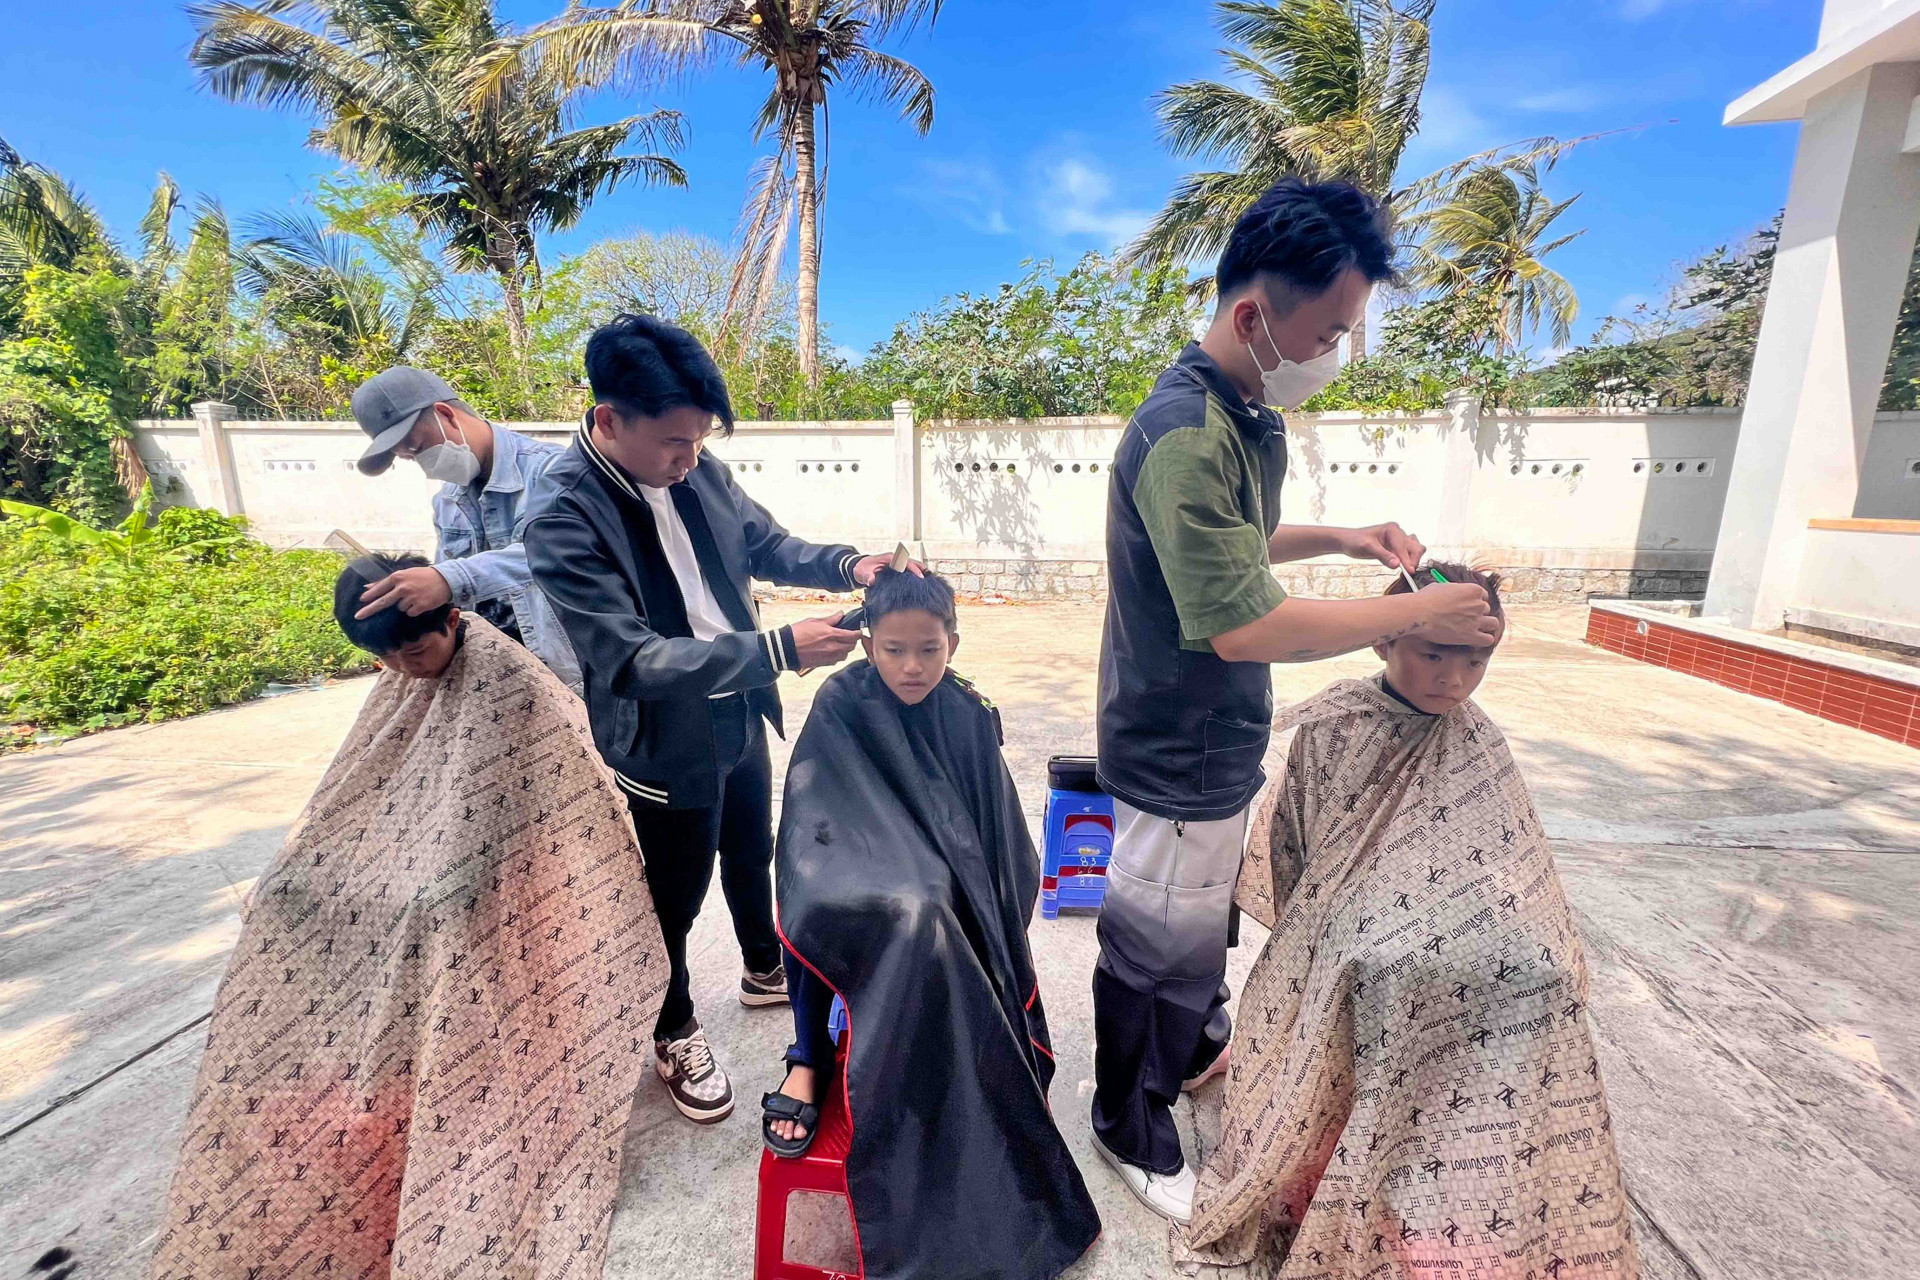 Tại chương trình, các học sinh còn được cắt tóc miễn phí